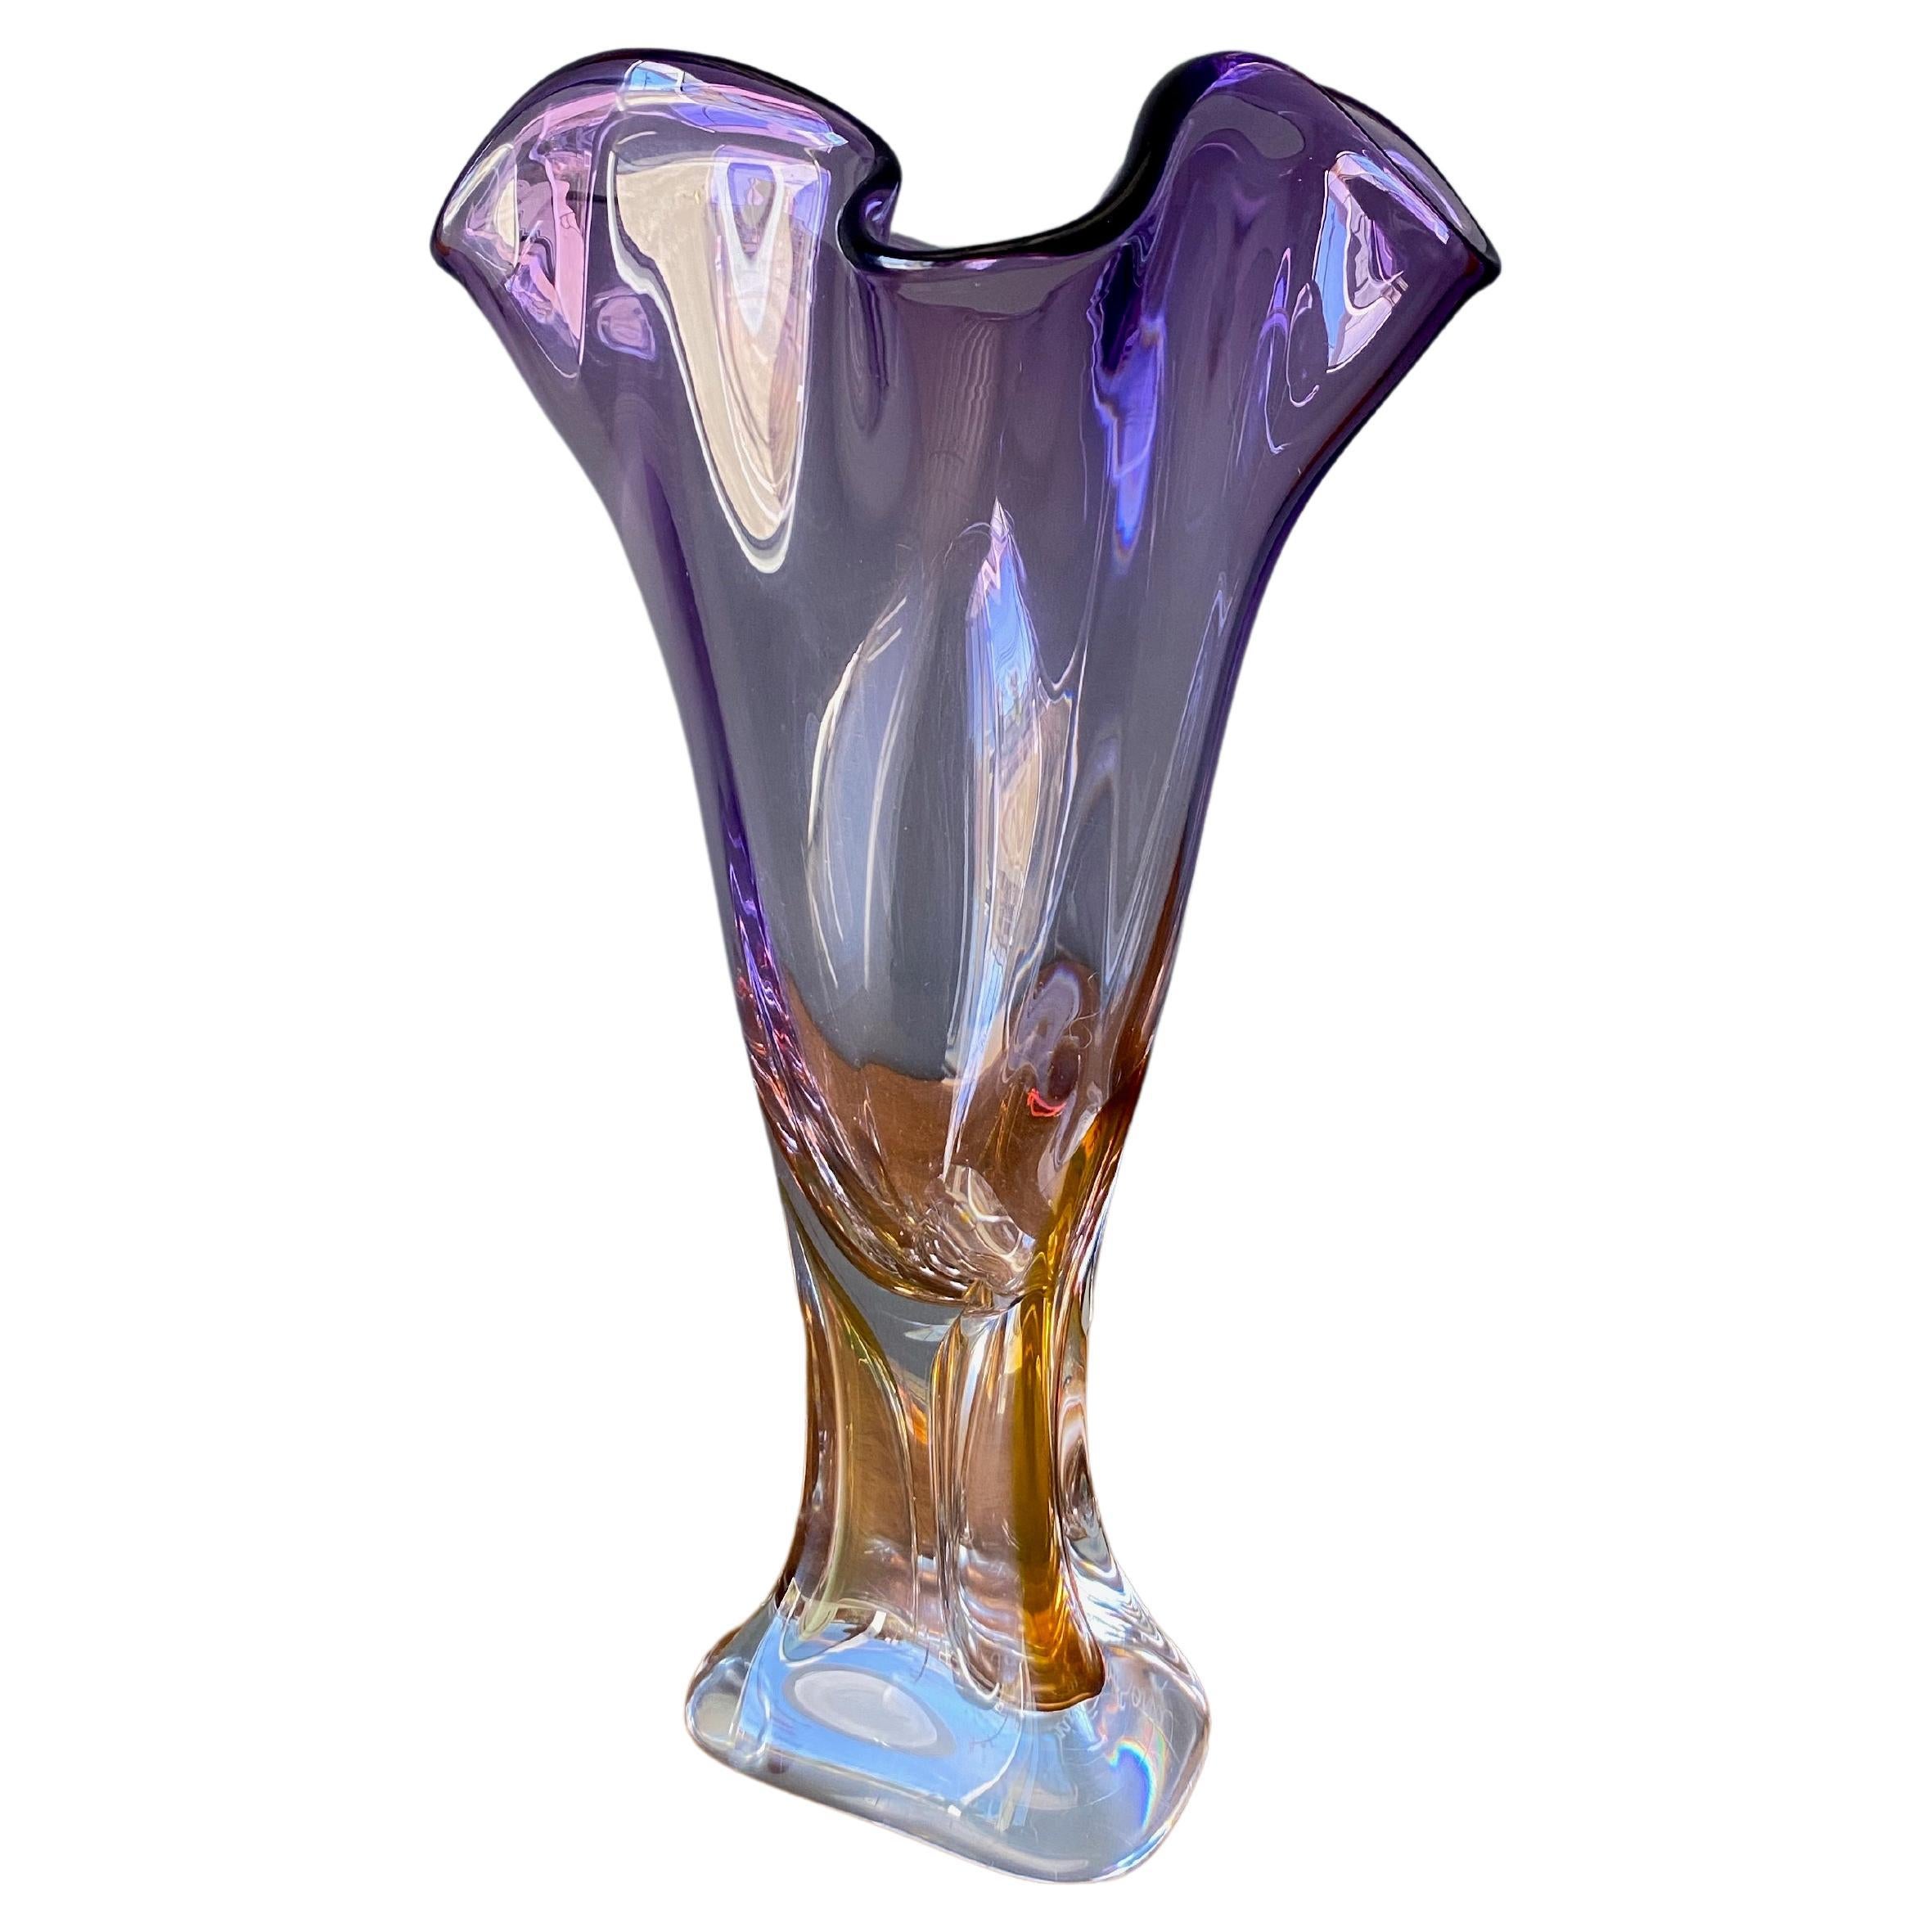 Purple Glass Vases - 492 For Sale on 1stDibs | purple glass vase 